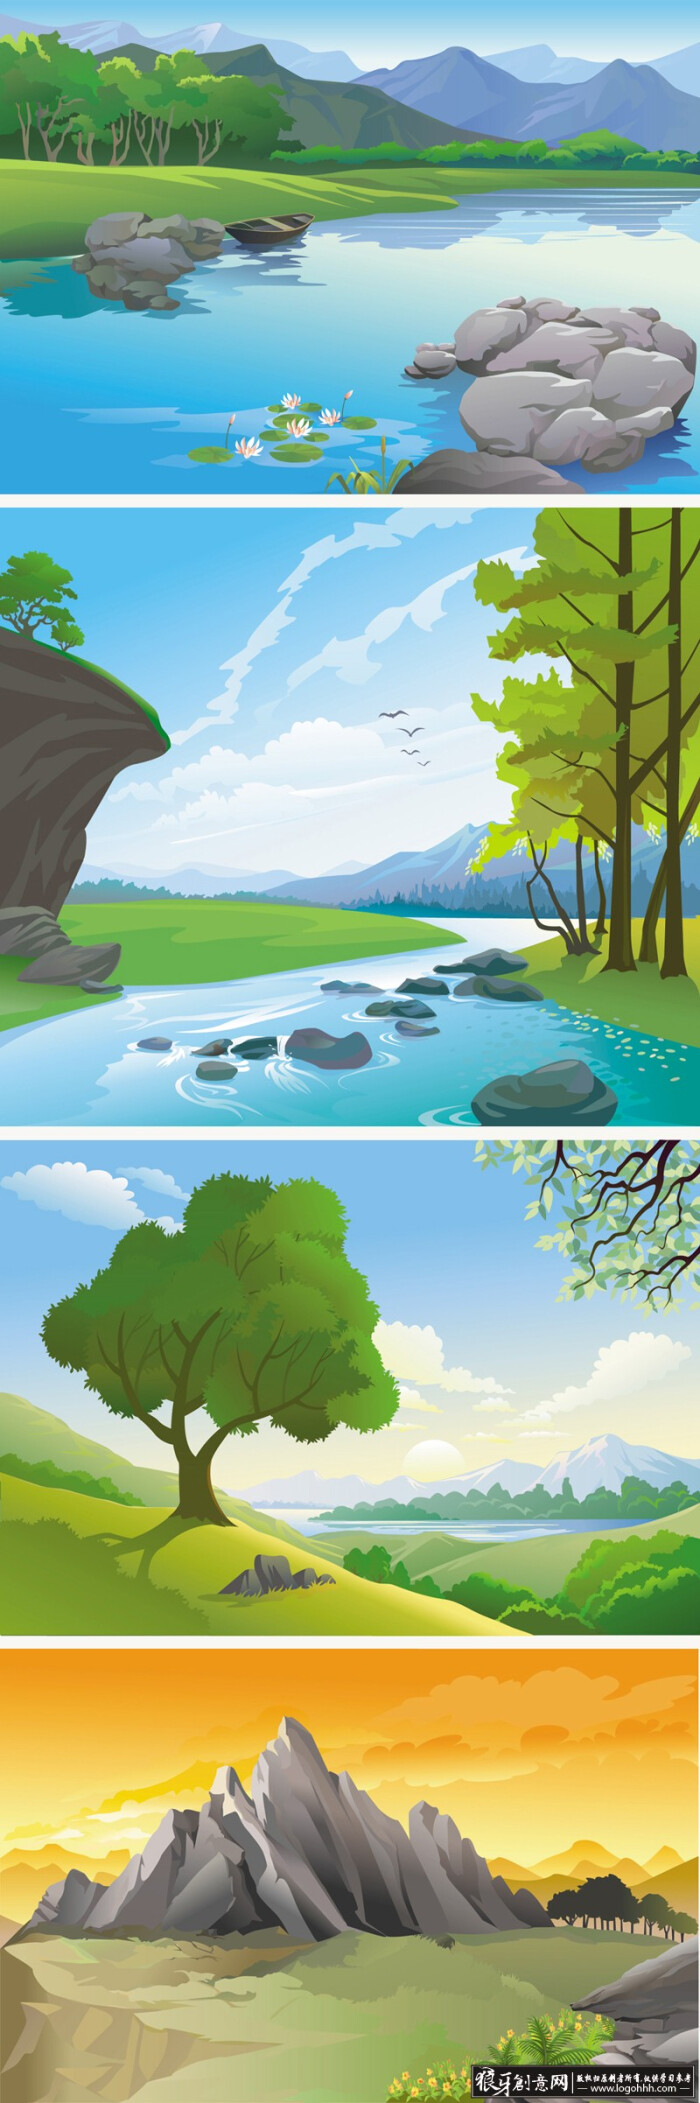 矢量风景插画素材,风景画矢量图,大自然插画矢量图,矢量山坡,矢量水